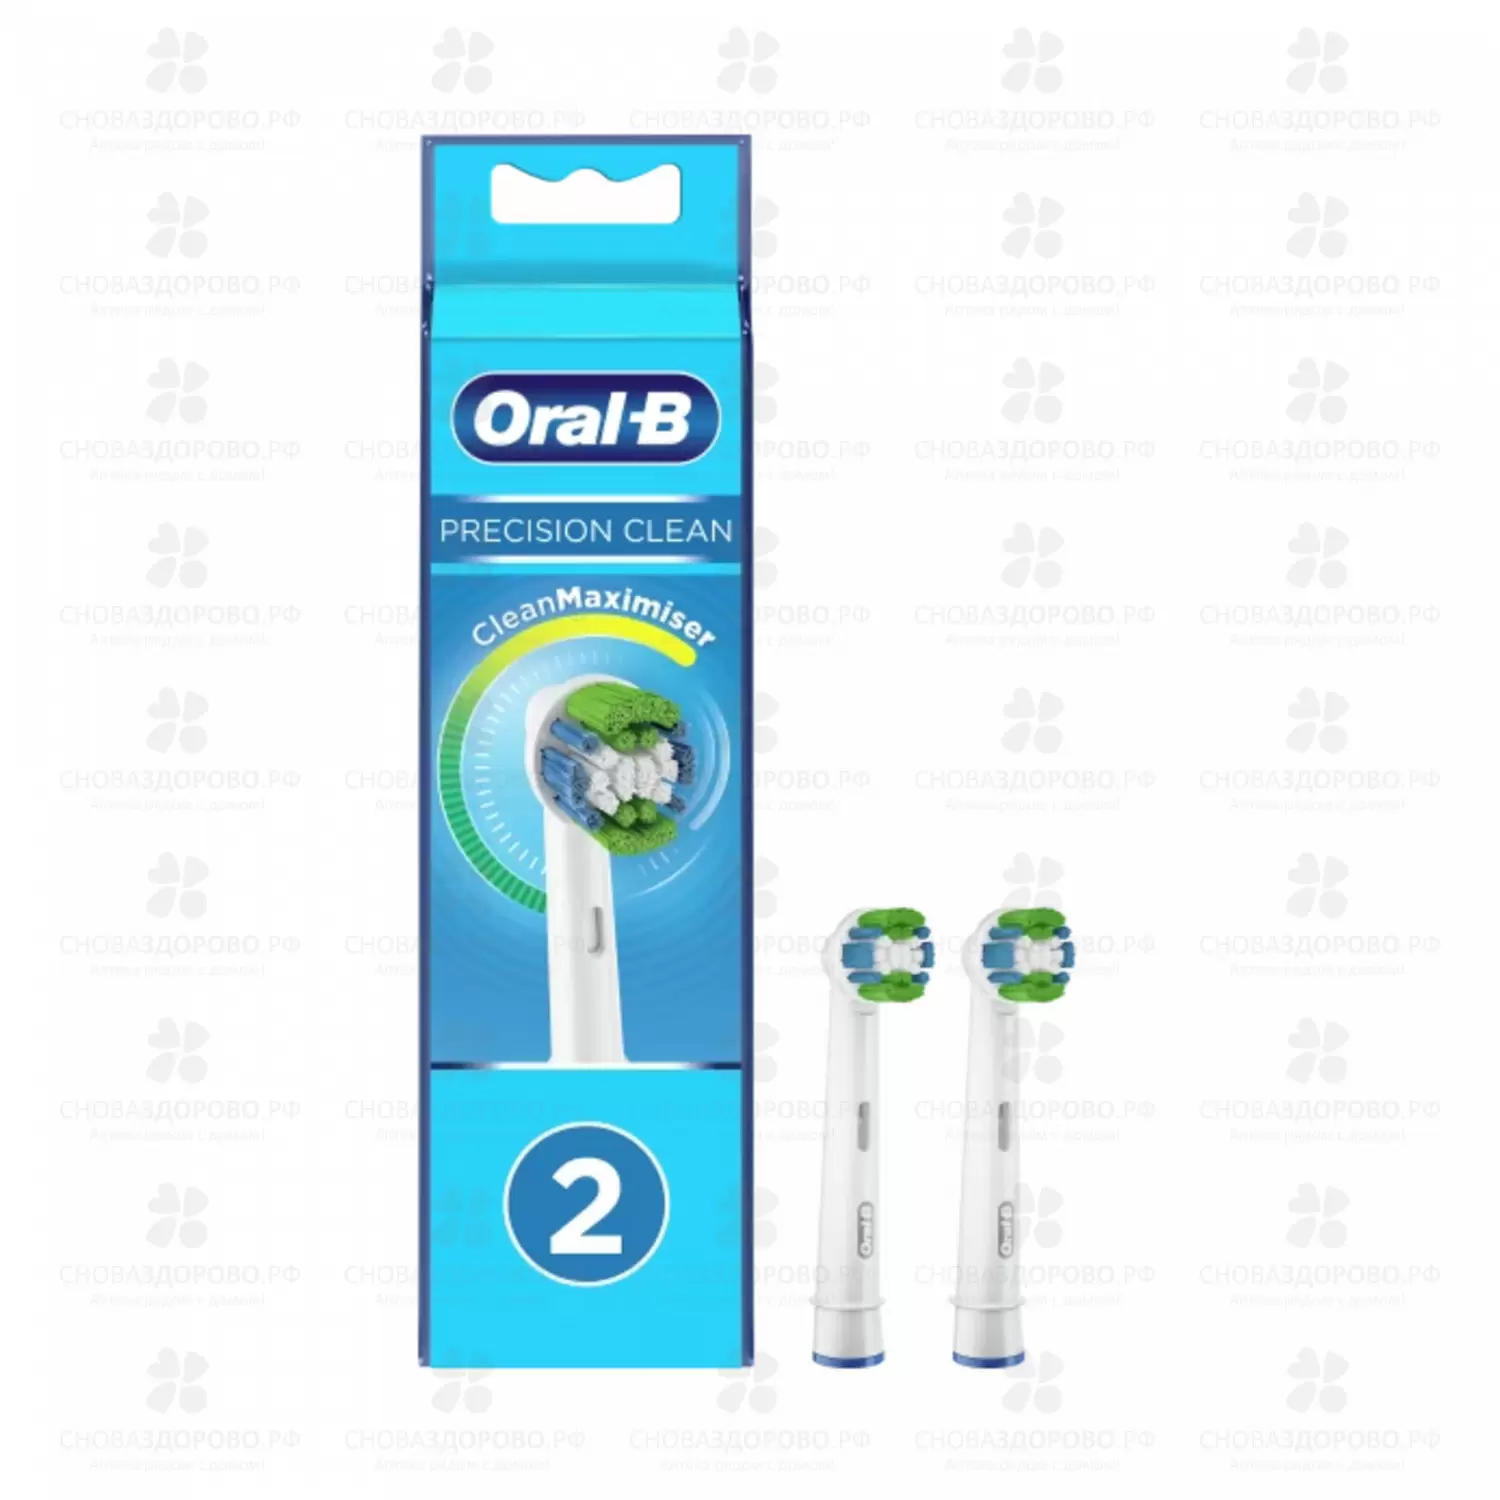 Орал-Би насадки для электрических зубных щеток Precision Clean ЕВ20RB 2шт. ✅ 35312/06270 | Сноваздорово.рф